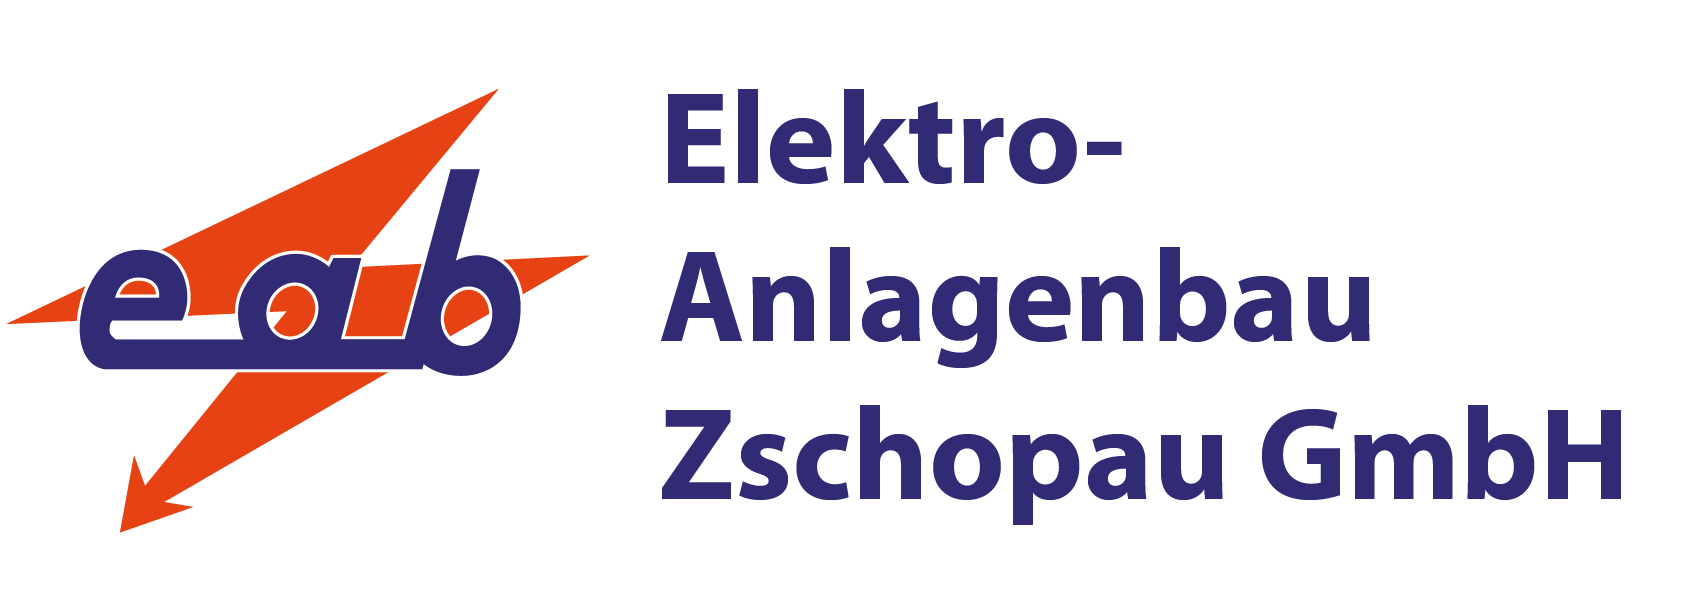 Elektro-Anlagenbau Zschopau GmbH